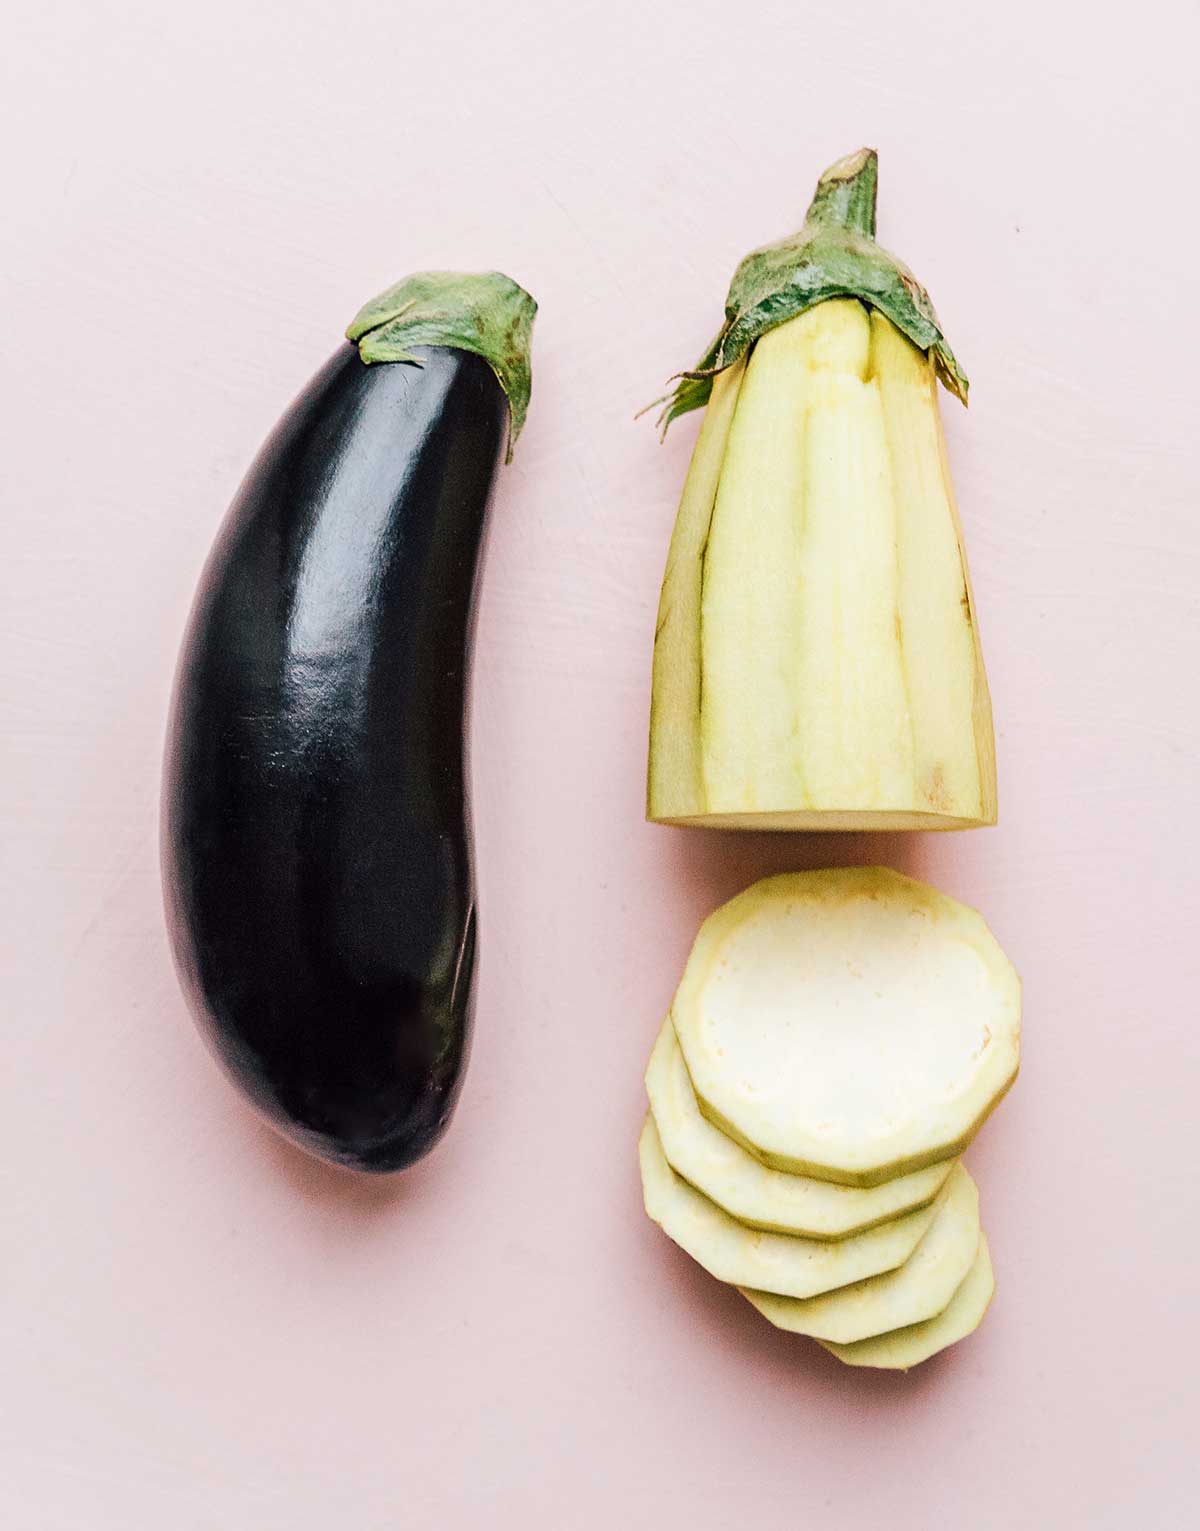 One full eggplant lying beside one peeled, sliced eggplant